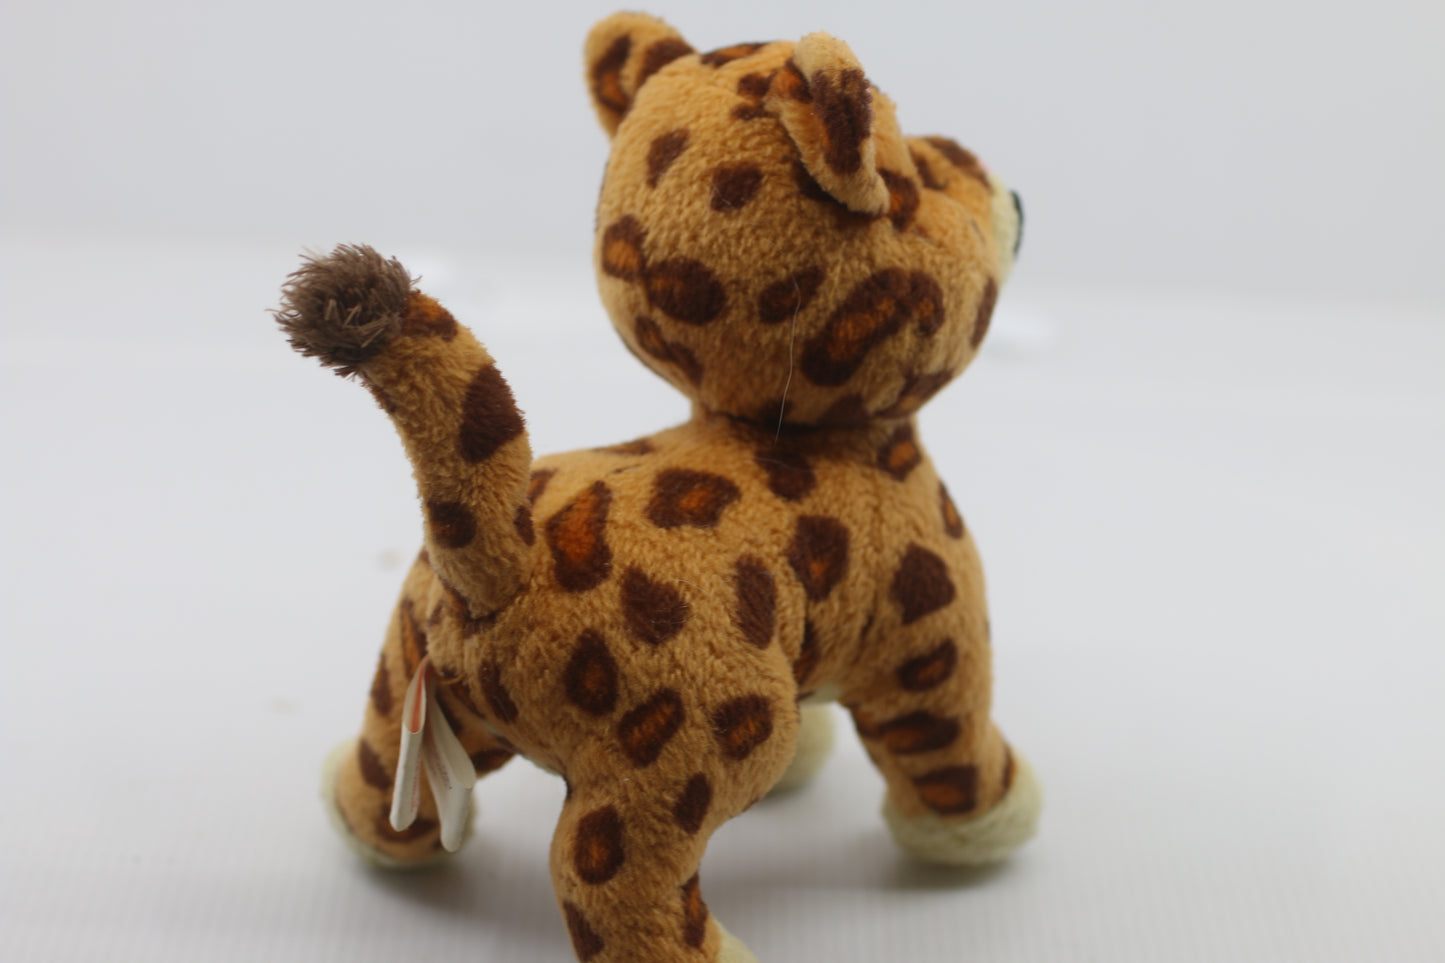 TY Beanie Babies Baby Jaguar 6" Plush Toy Stuffed Animal GO DIEGO GO!